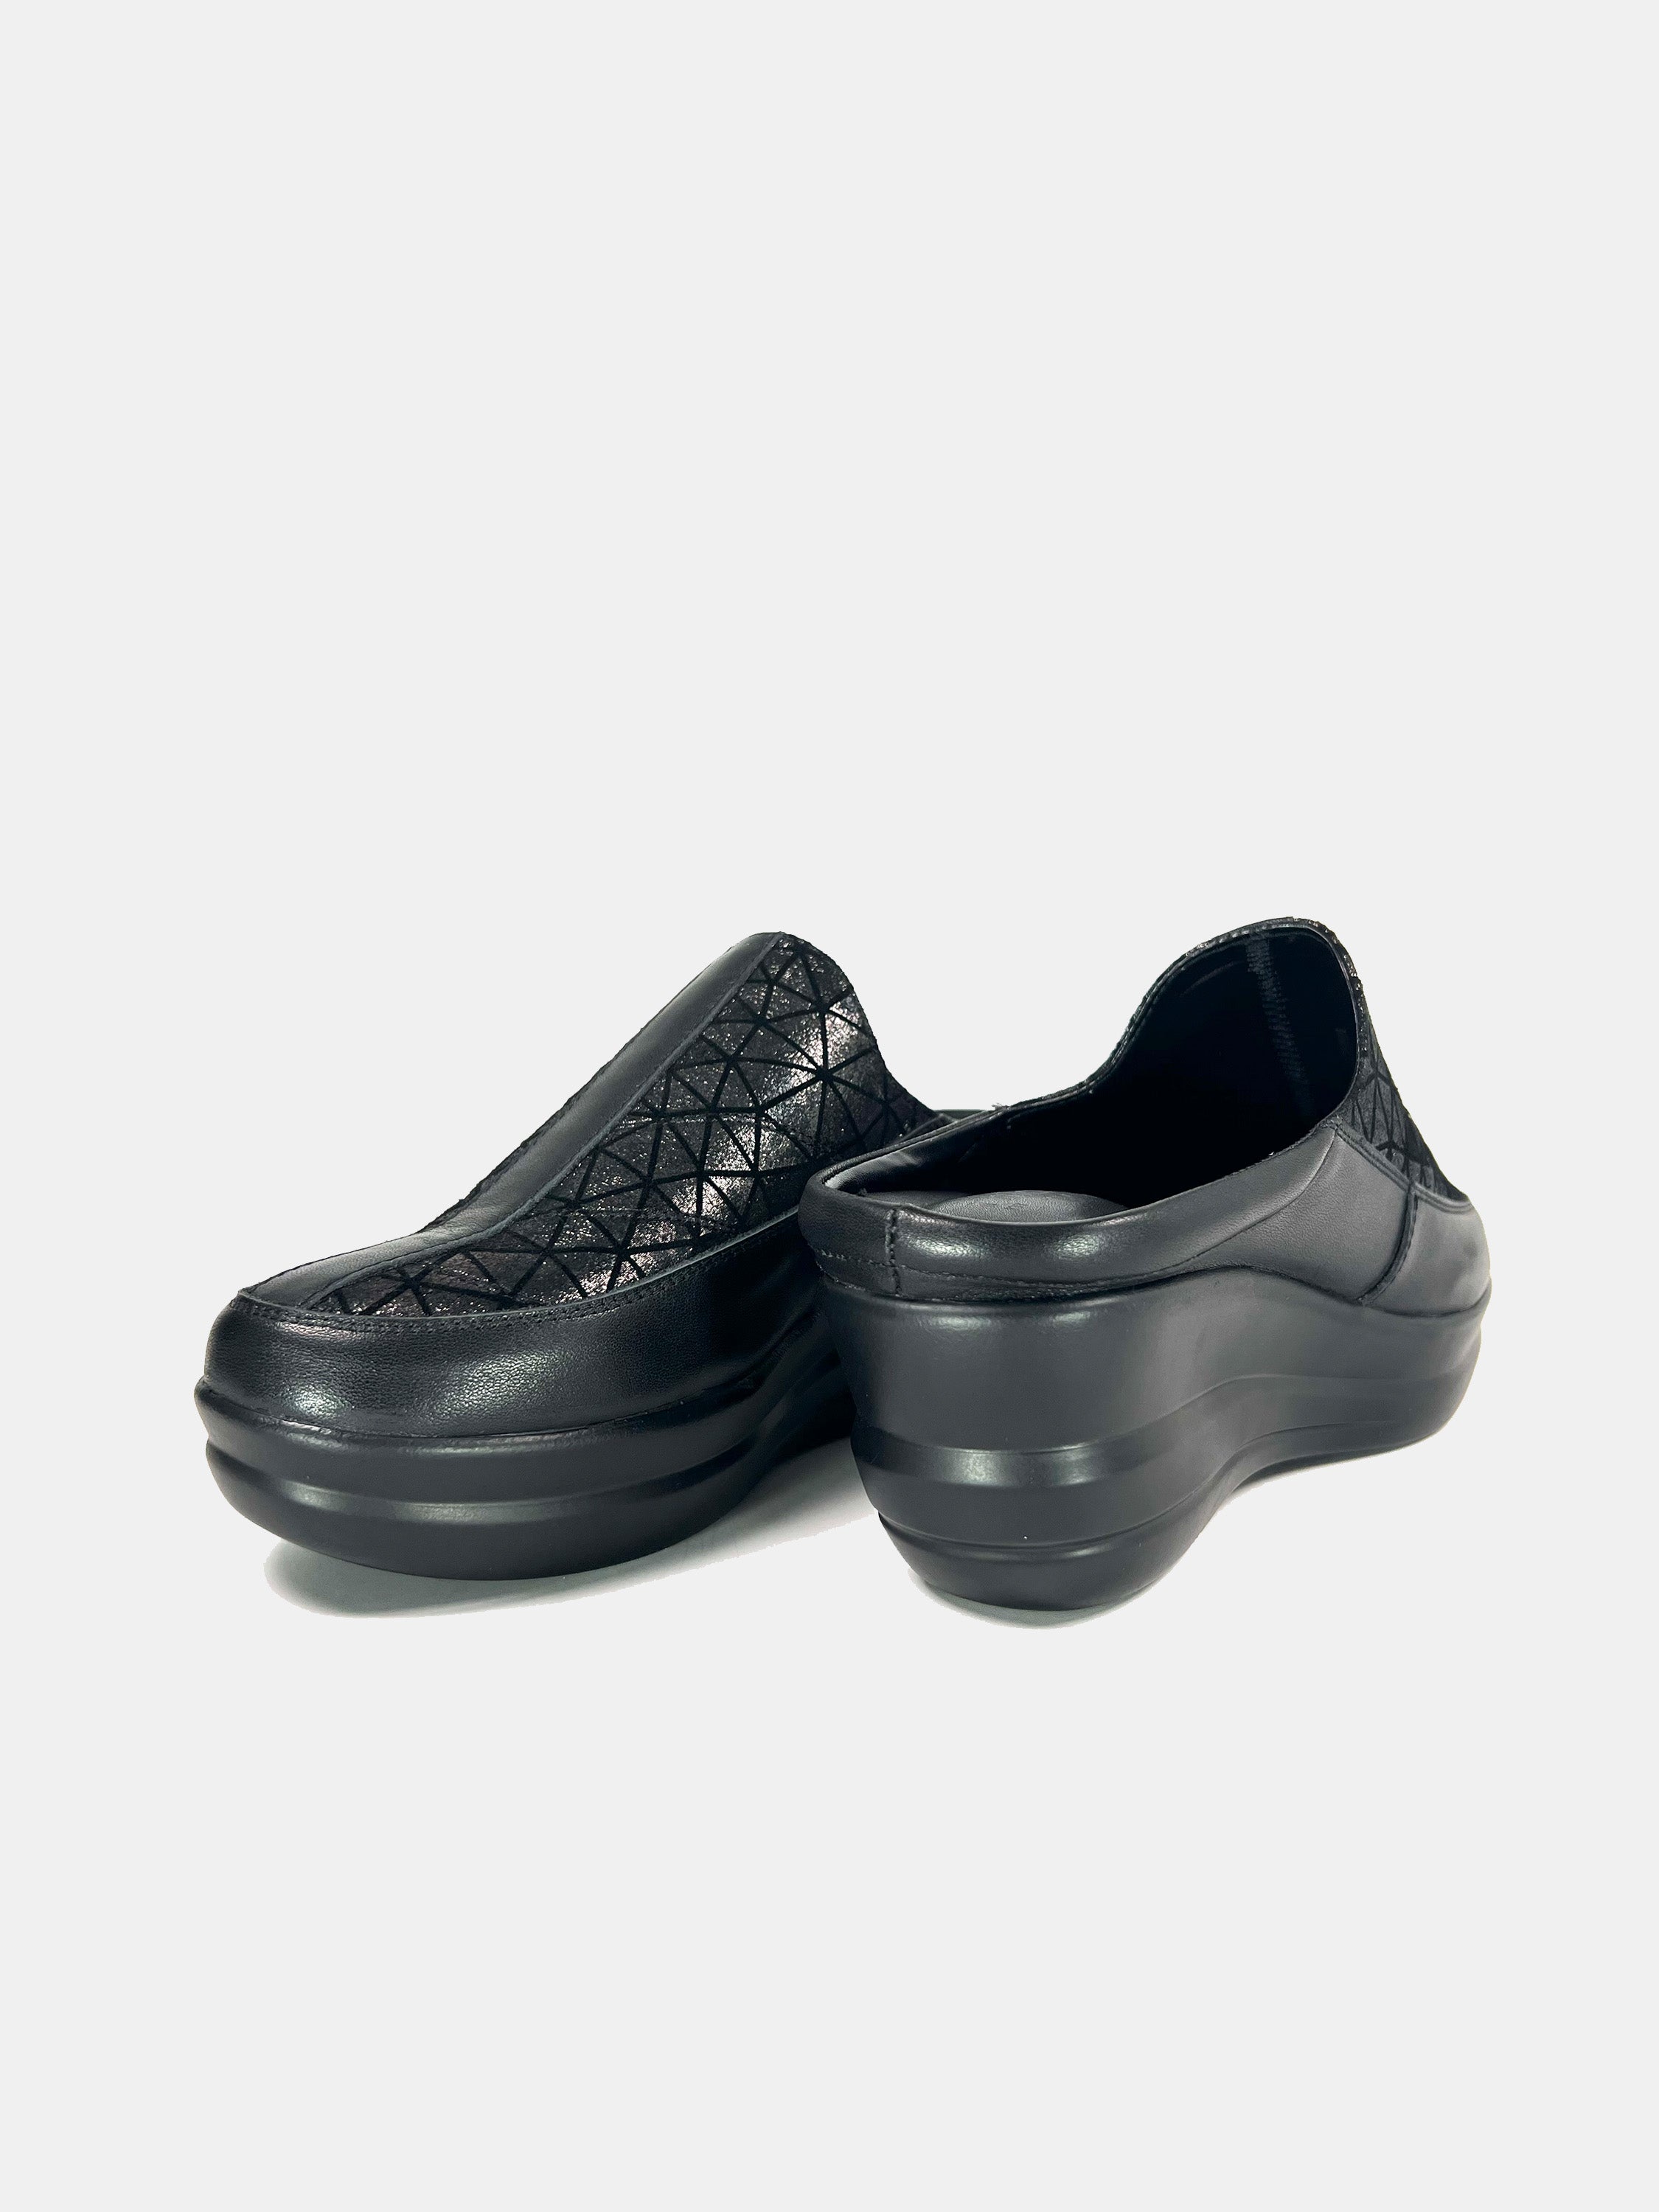 Michelle Morgan 19009-B1 Women's Mule Shoes #color_Black